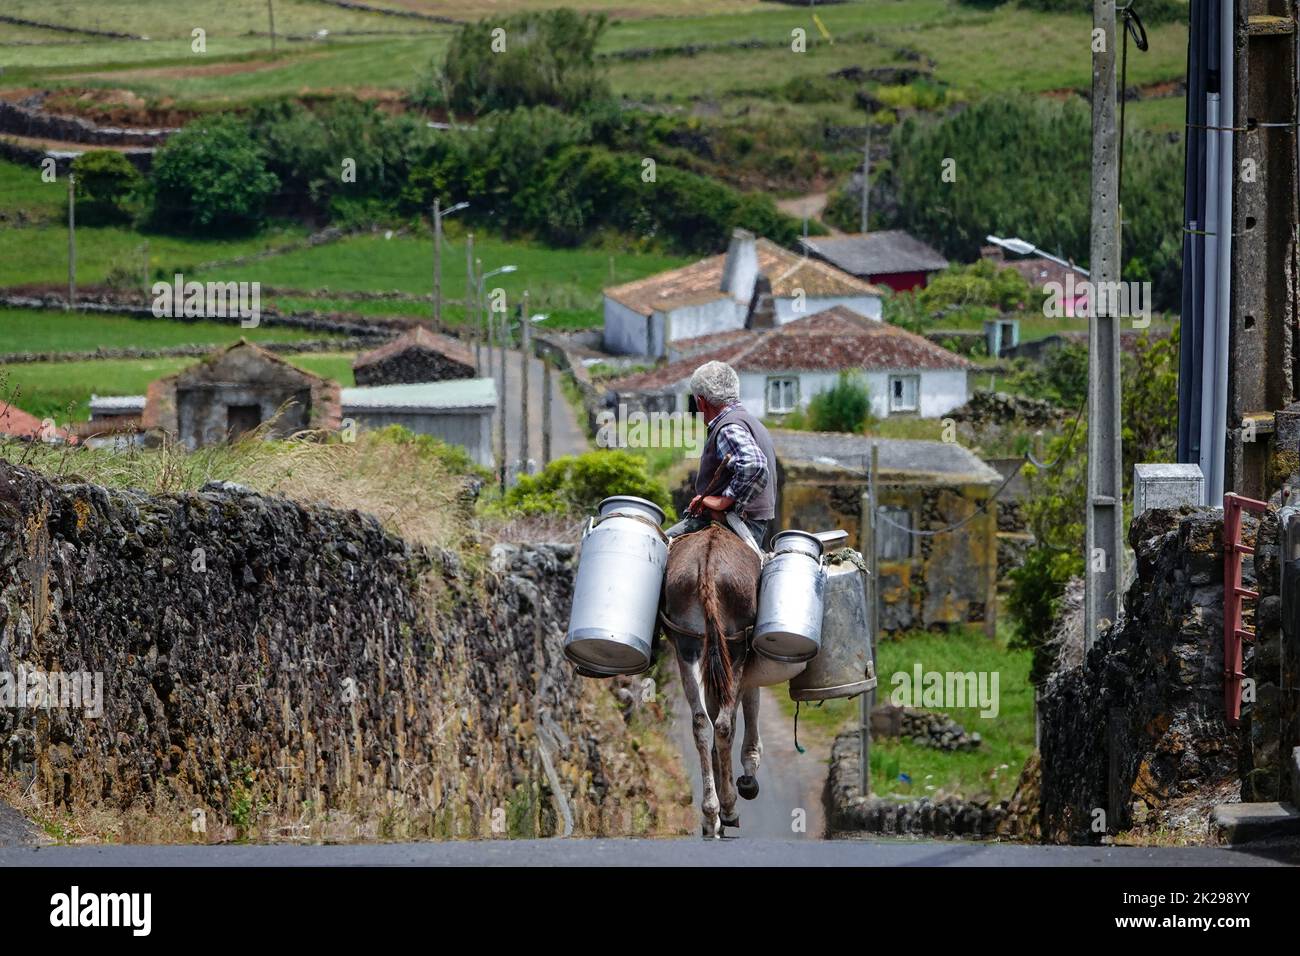 Agricultor lechero que lleva latas de leche en burro a un lugar de almacenamiento en Villa Nova, isla de Terceira, Azores, Portugal. Las Azores son conocidas como la tierra de las vacas felices y producen el 30% de toda la producción lechera en Portugal. Foto de stock